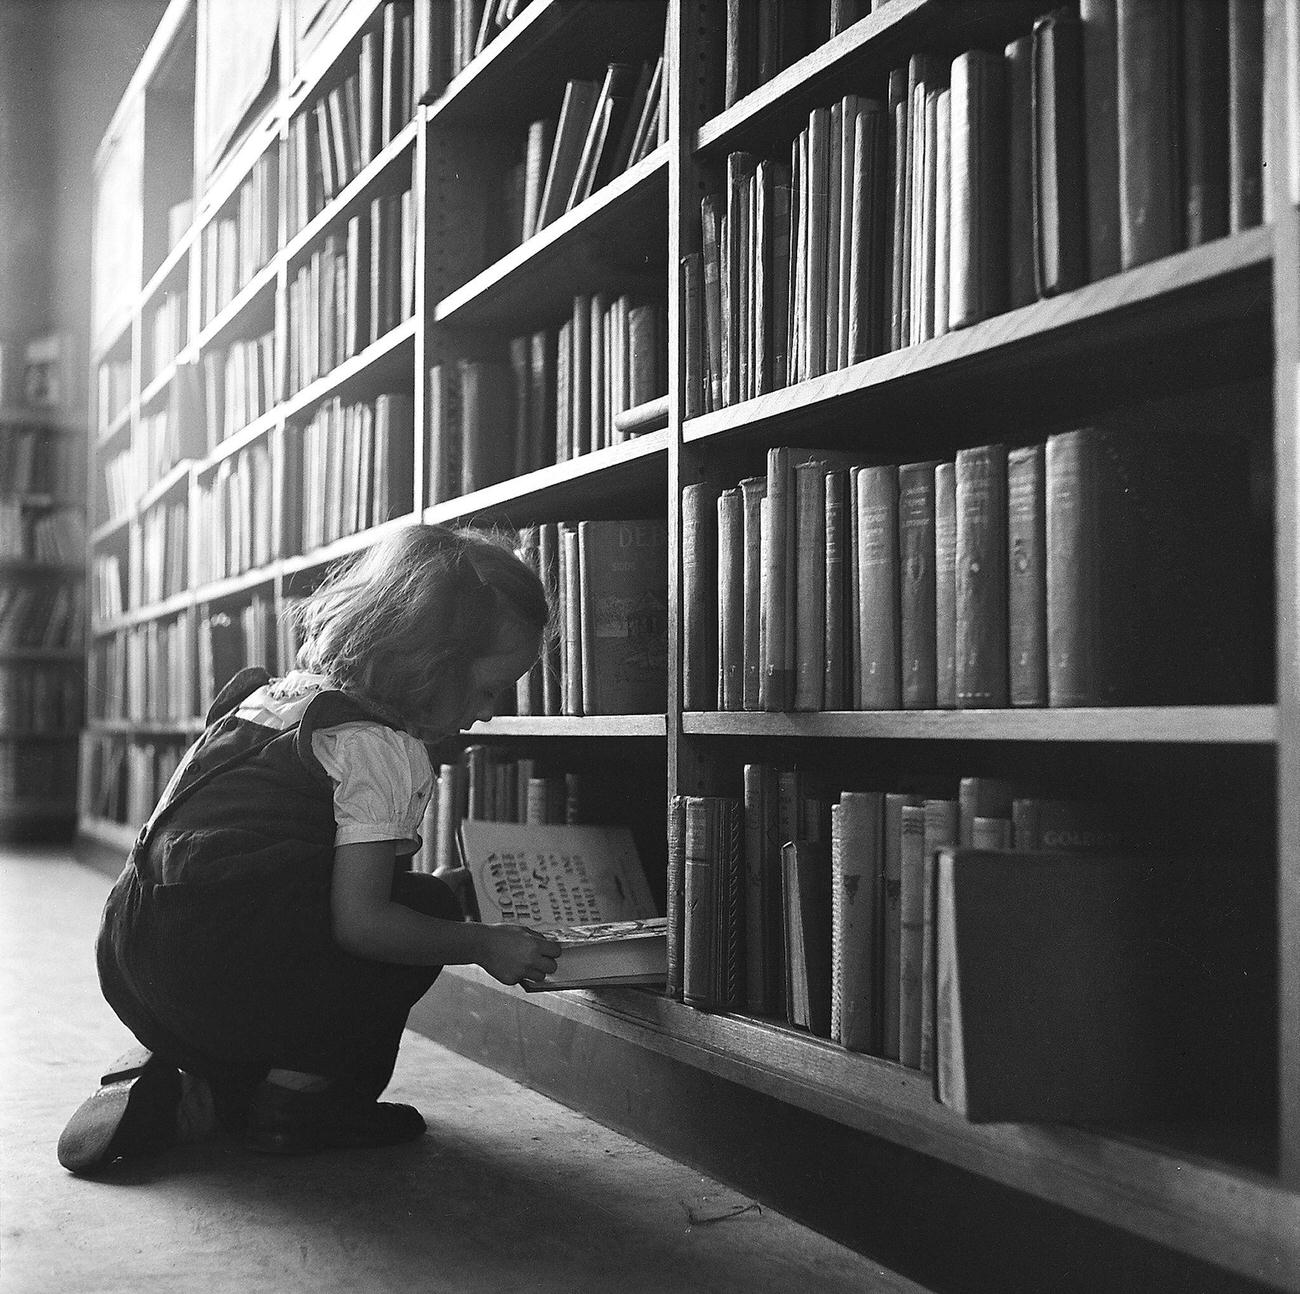 Girl Picks Books From Shelf, 1947